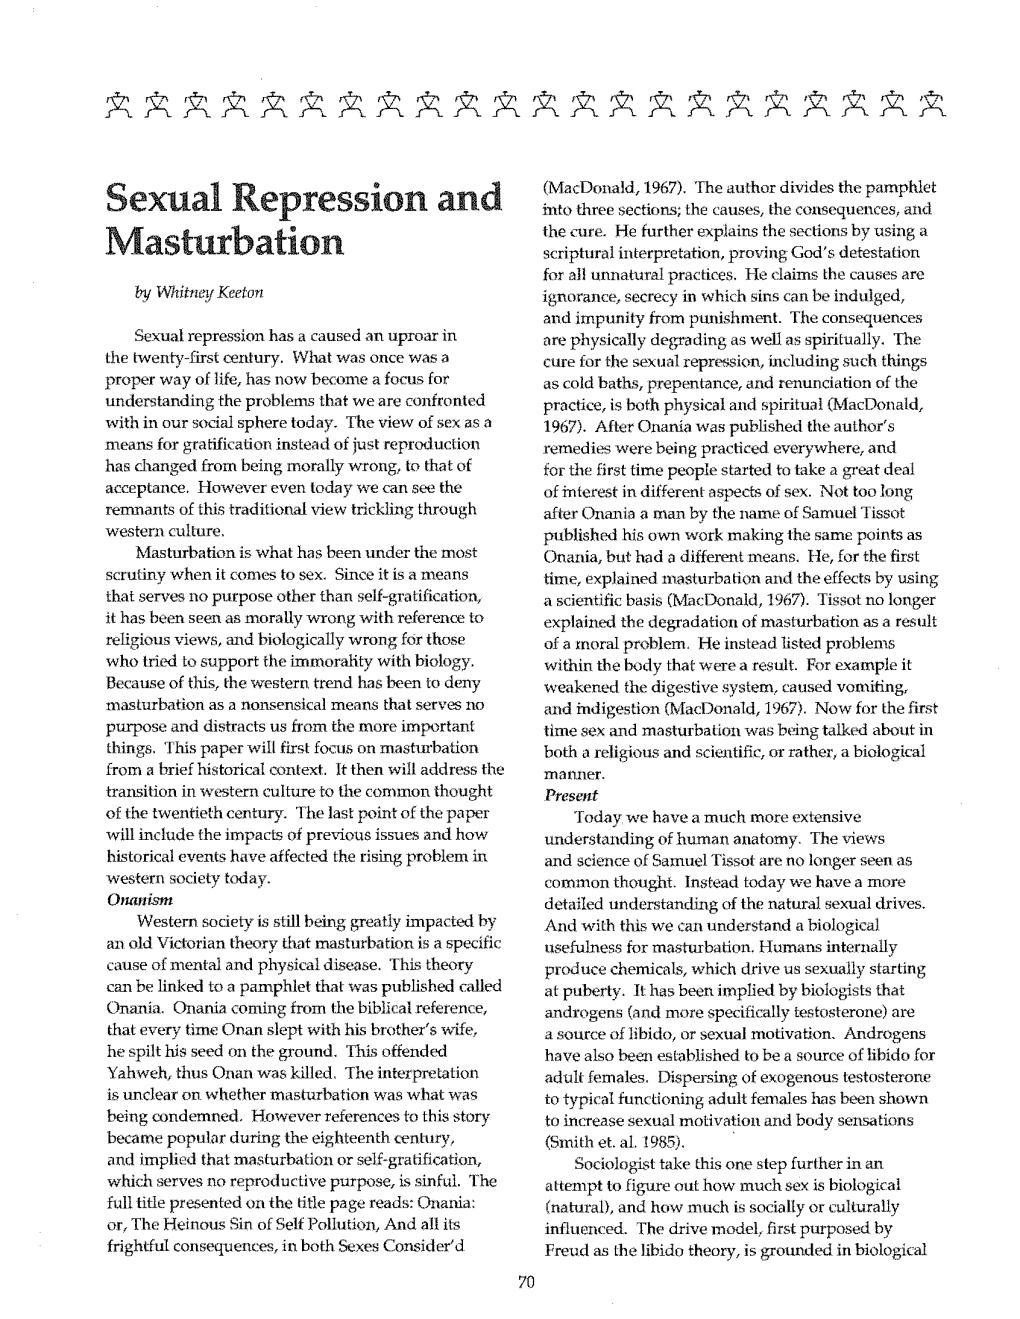 Sexual Repression and Masturbation